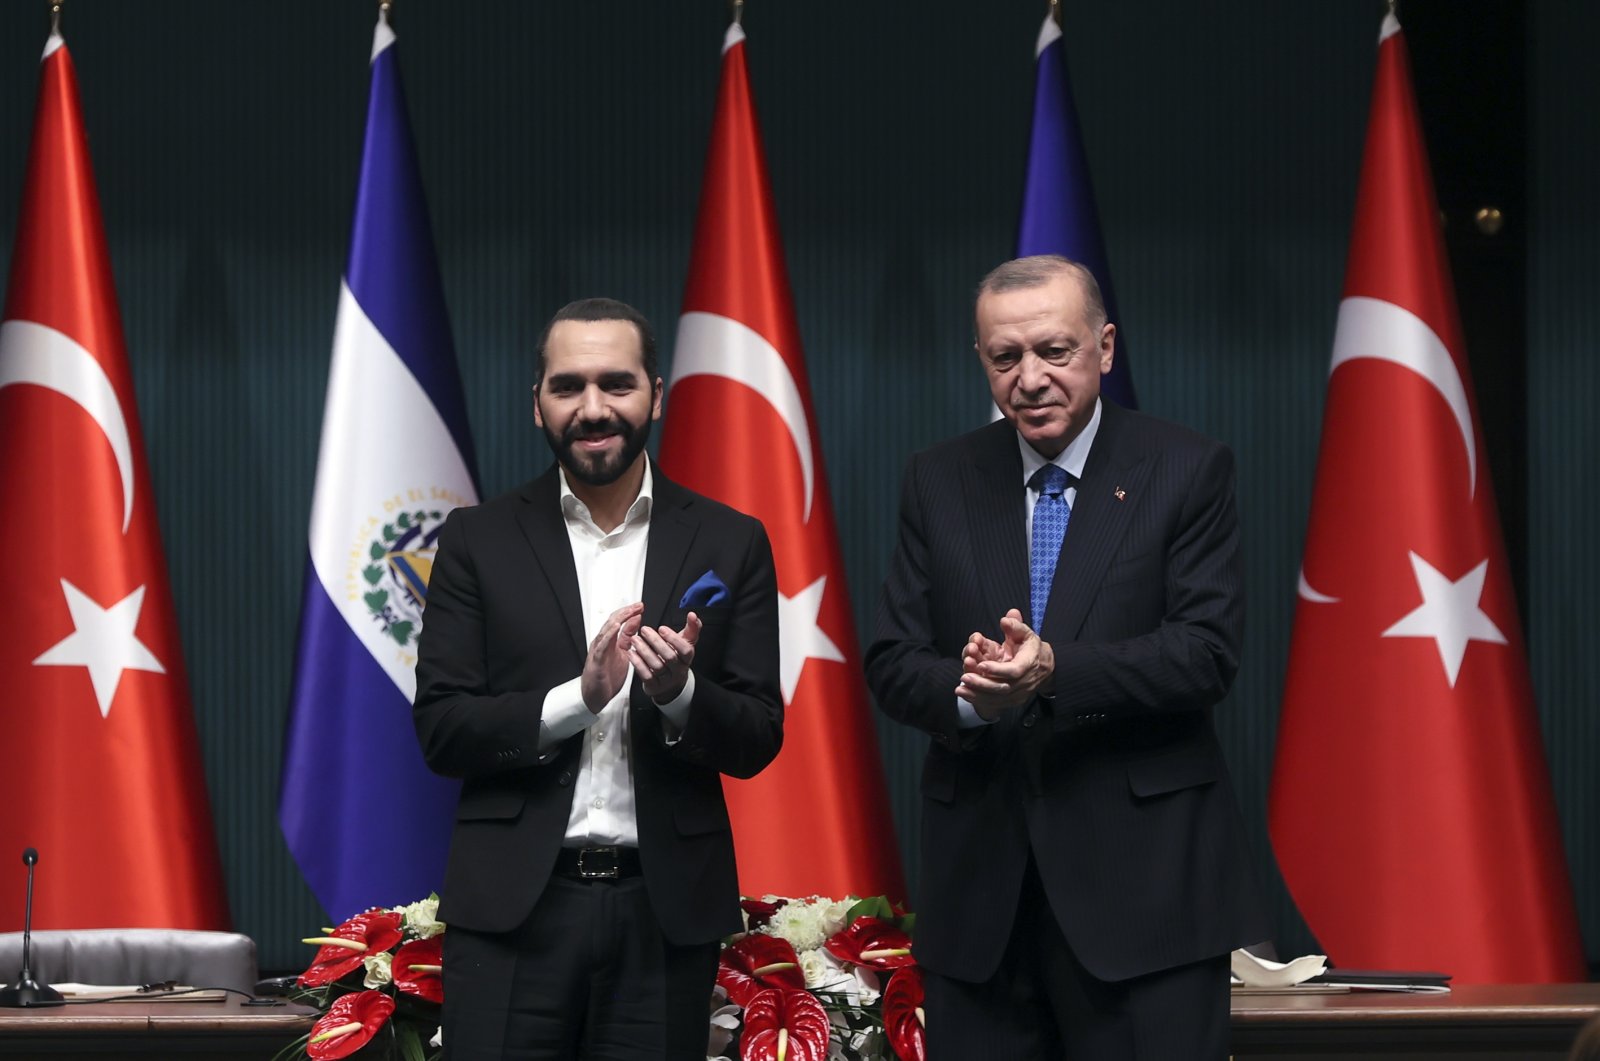 Erdoğan dan Bukele: masa lalu Ottoman, masa kini yang menantang, masa depan bersama